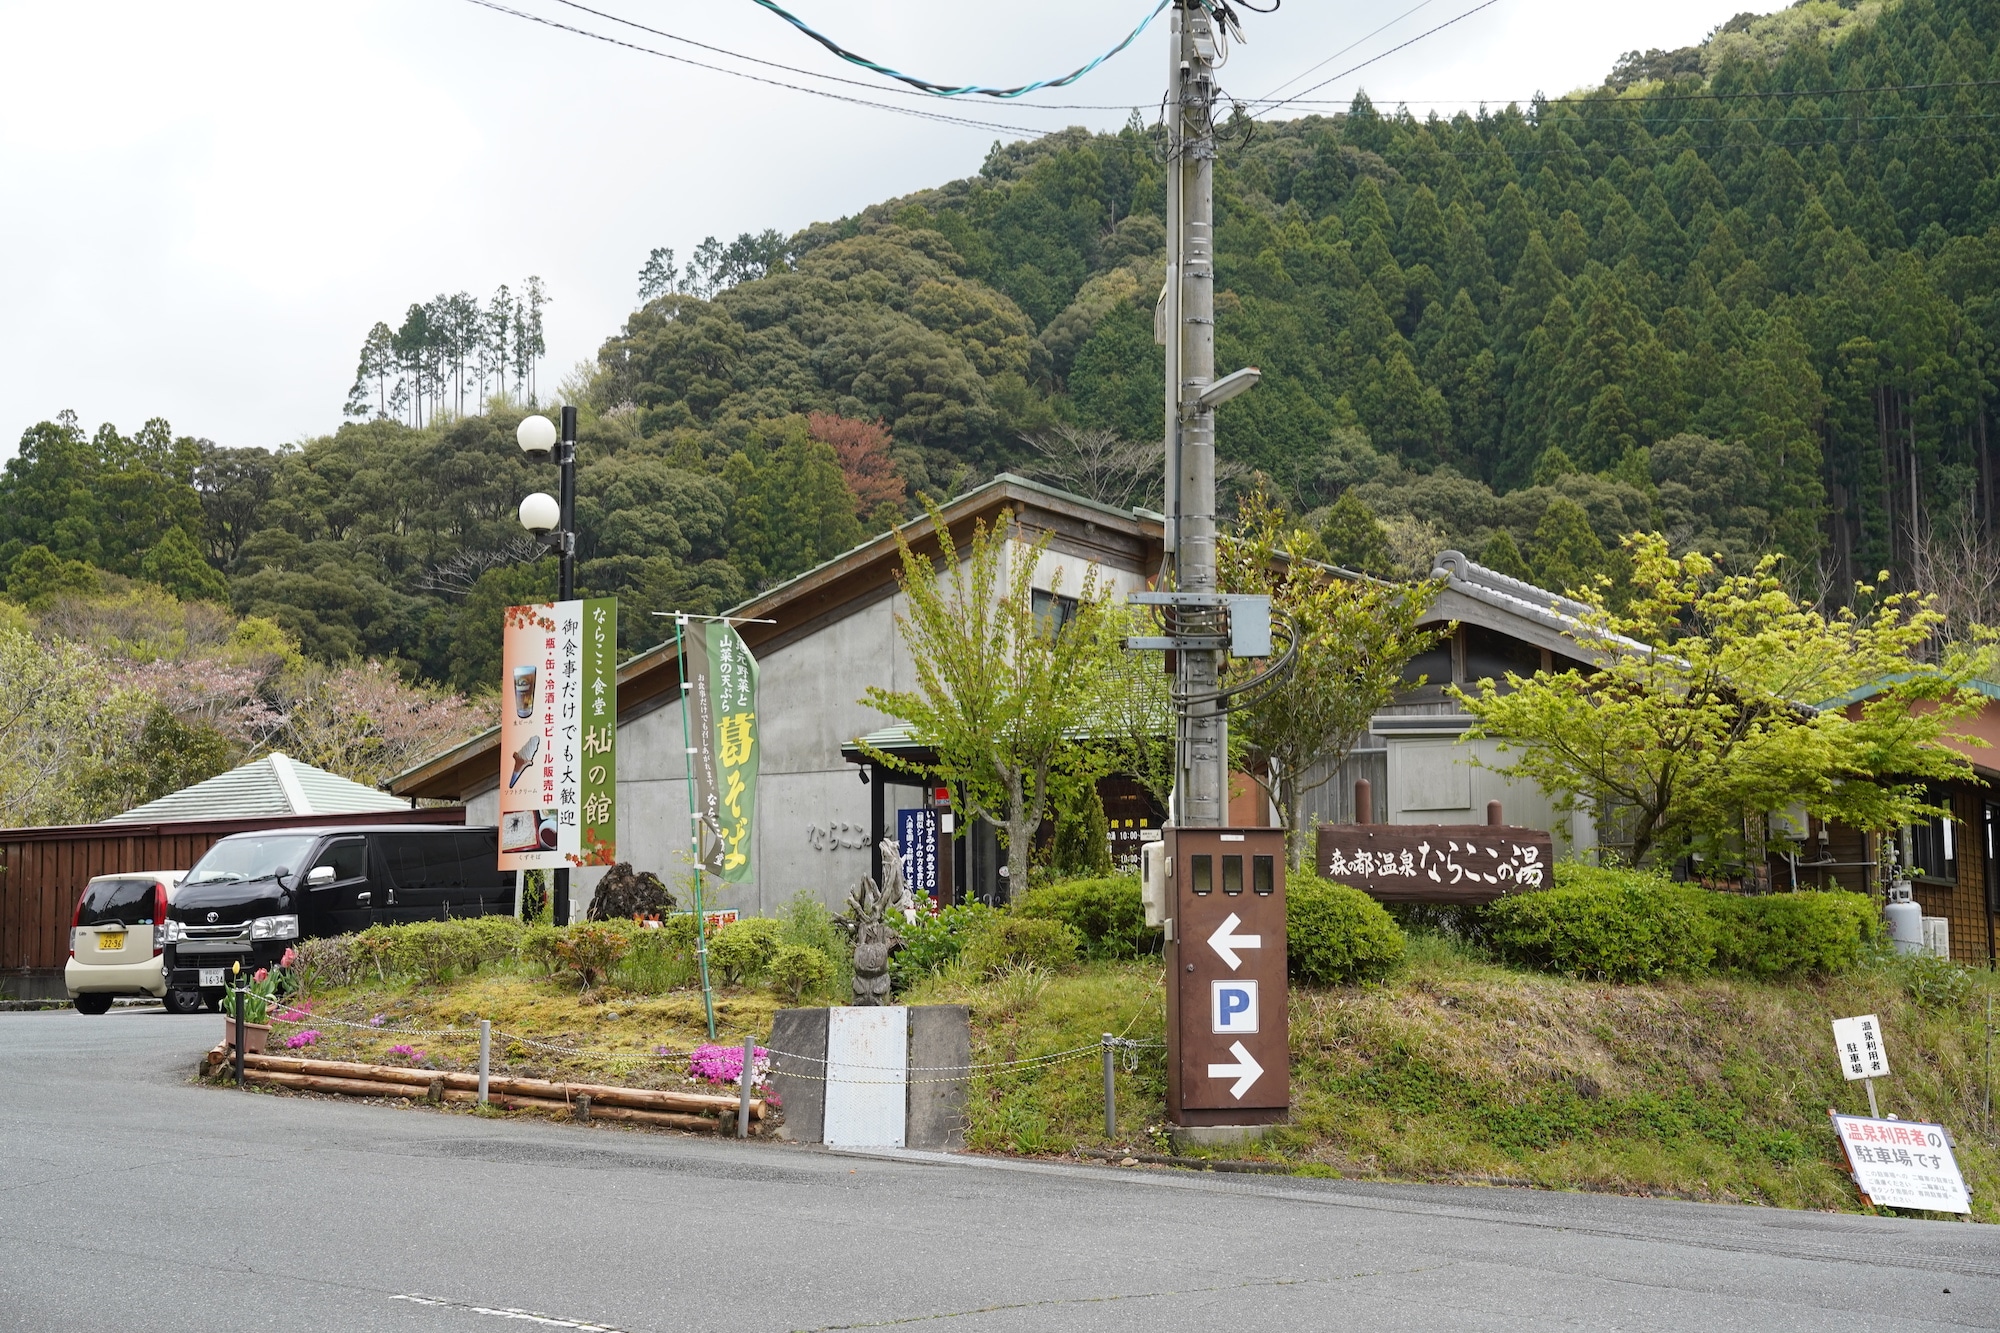 ならここの里が５月２７日から営業再開。でも、県道掛川川根線は未だ復旧途中…